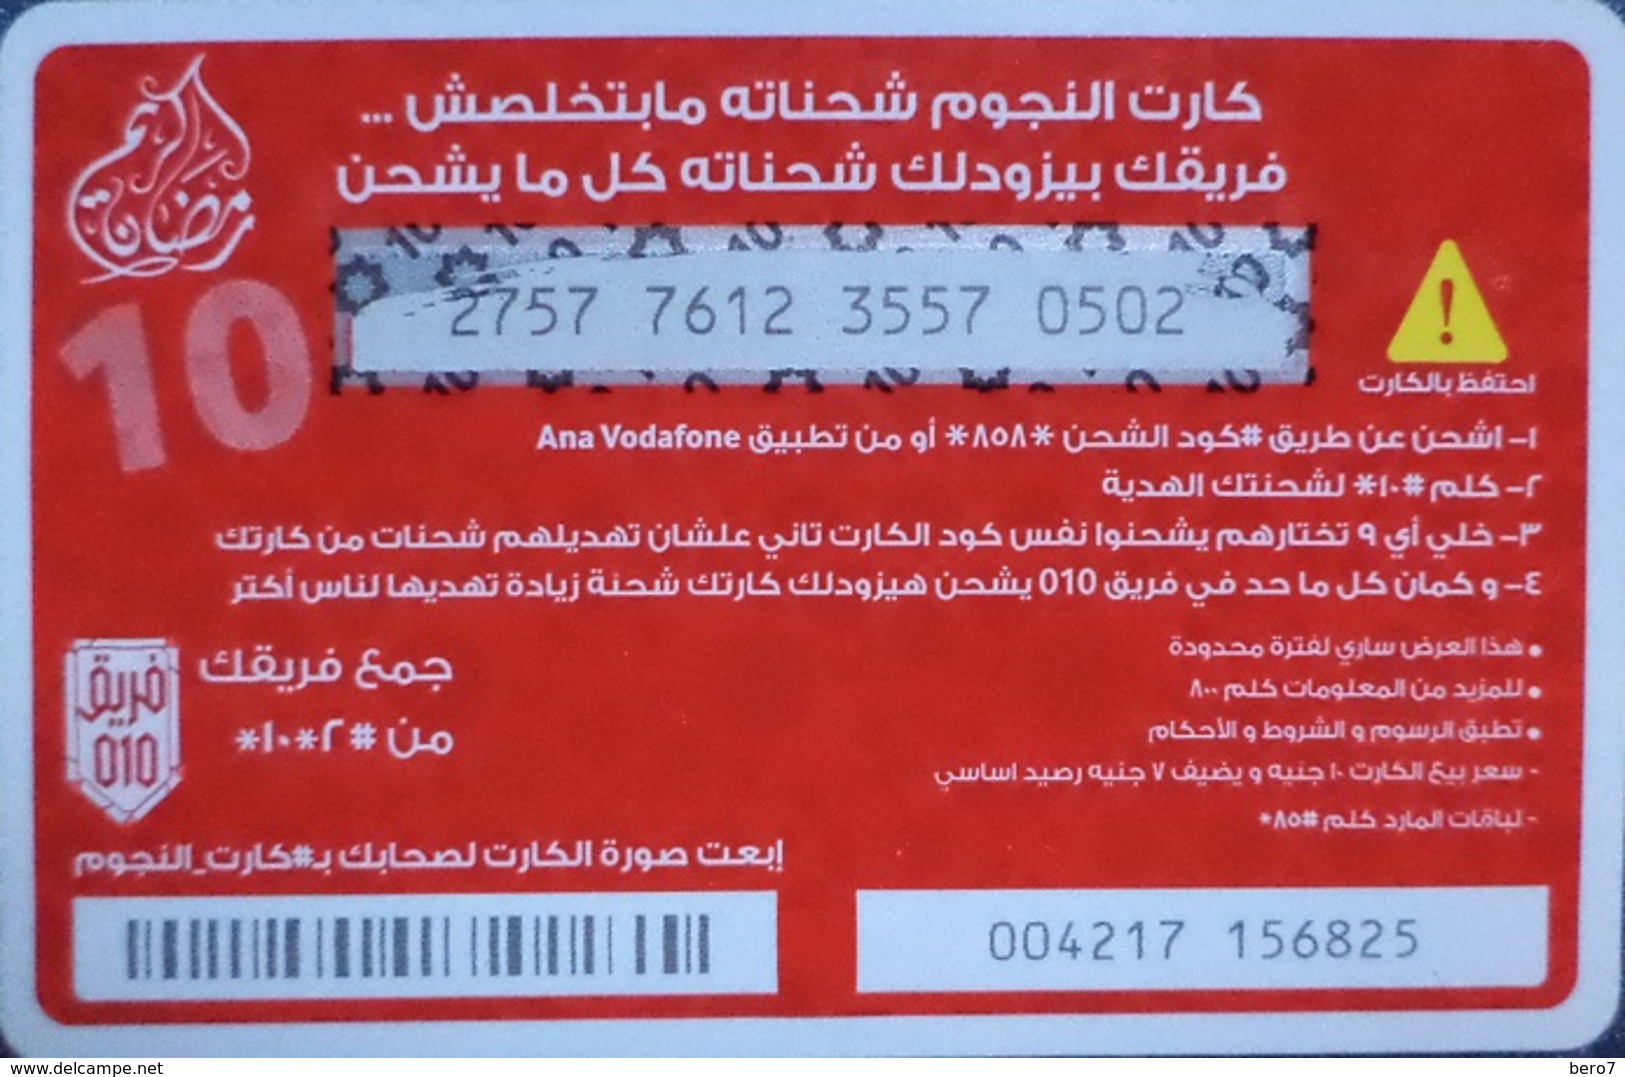 EGYPT - Stars Card  10 L.E, Vodafone , [used] (Egypte) (Egitto) (Ägypten) (Egipto) (Egypten) Africa - Egitto